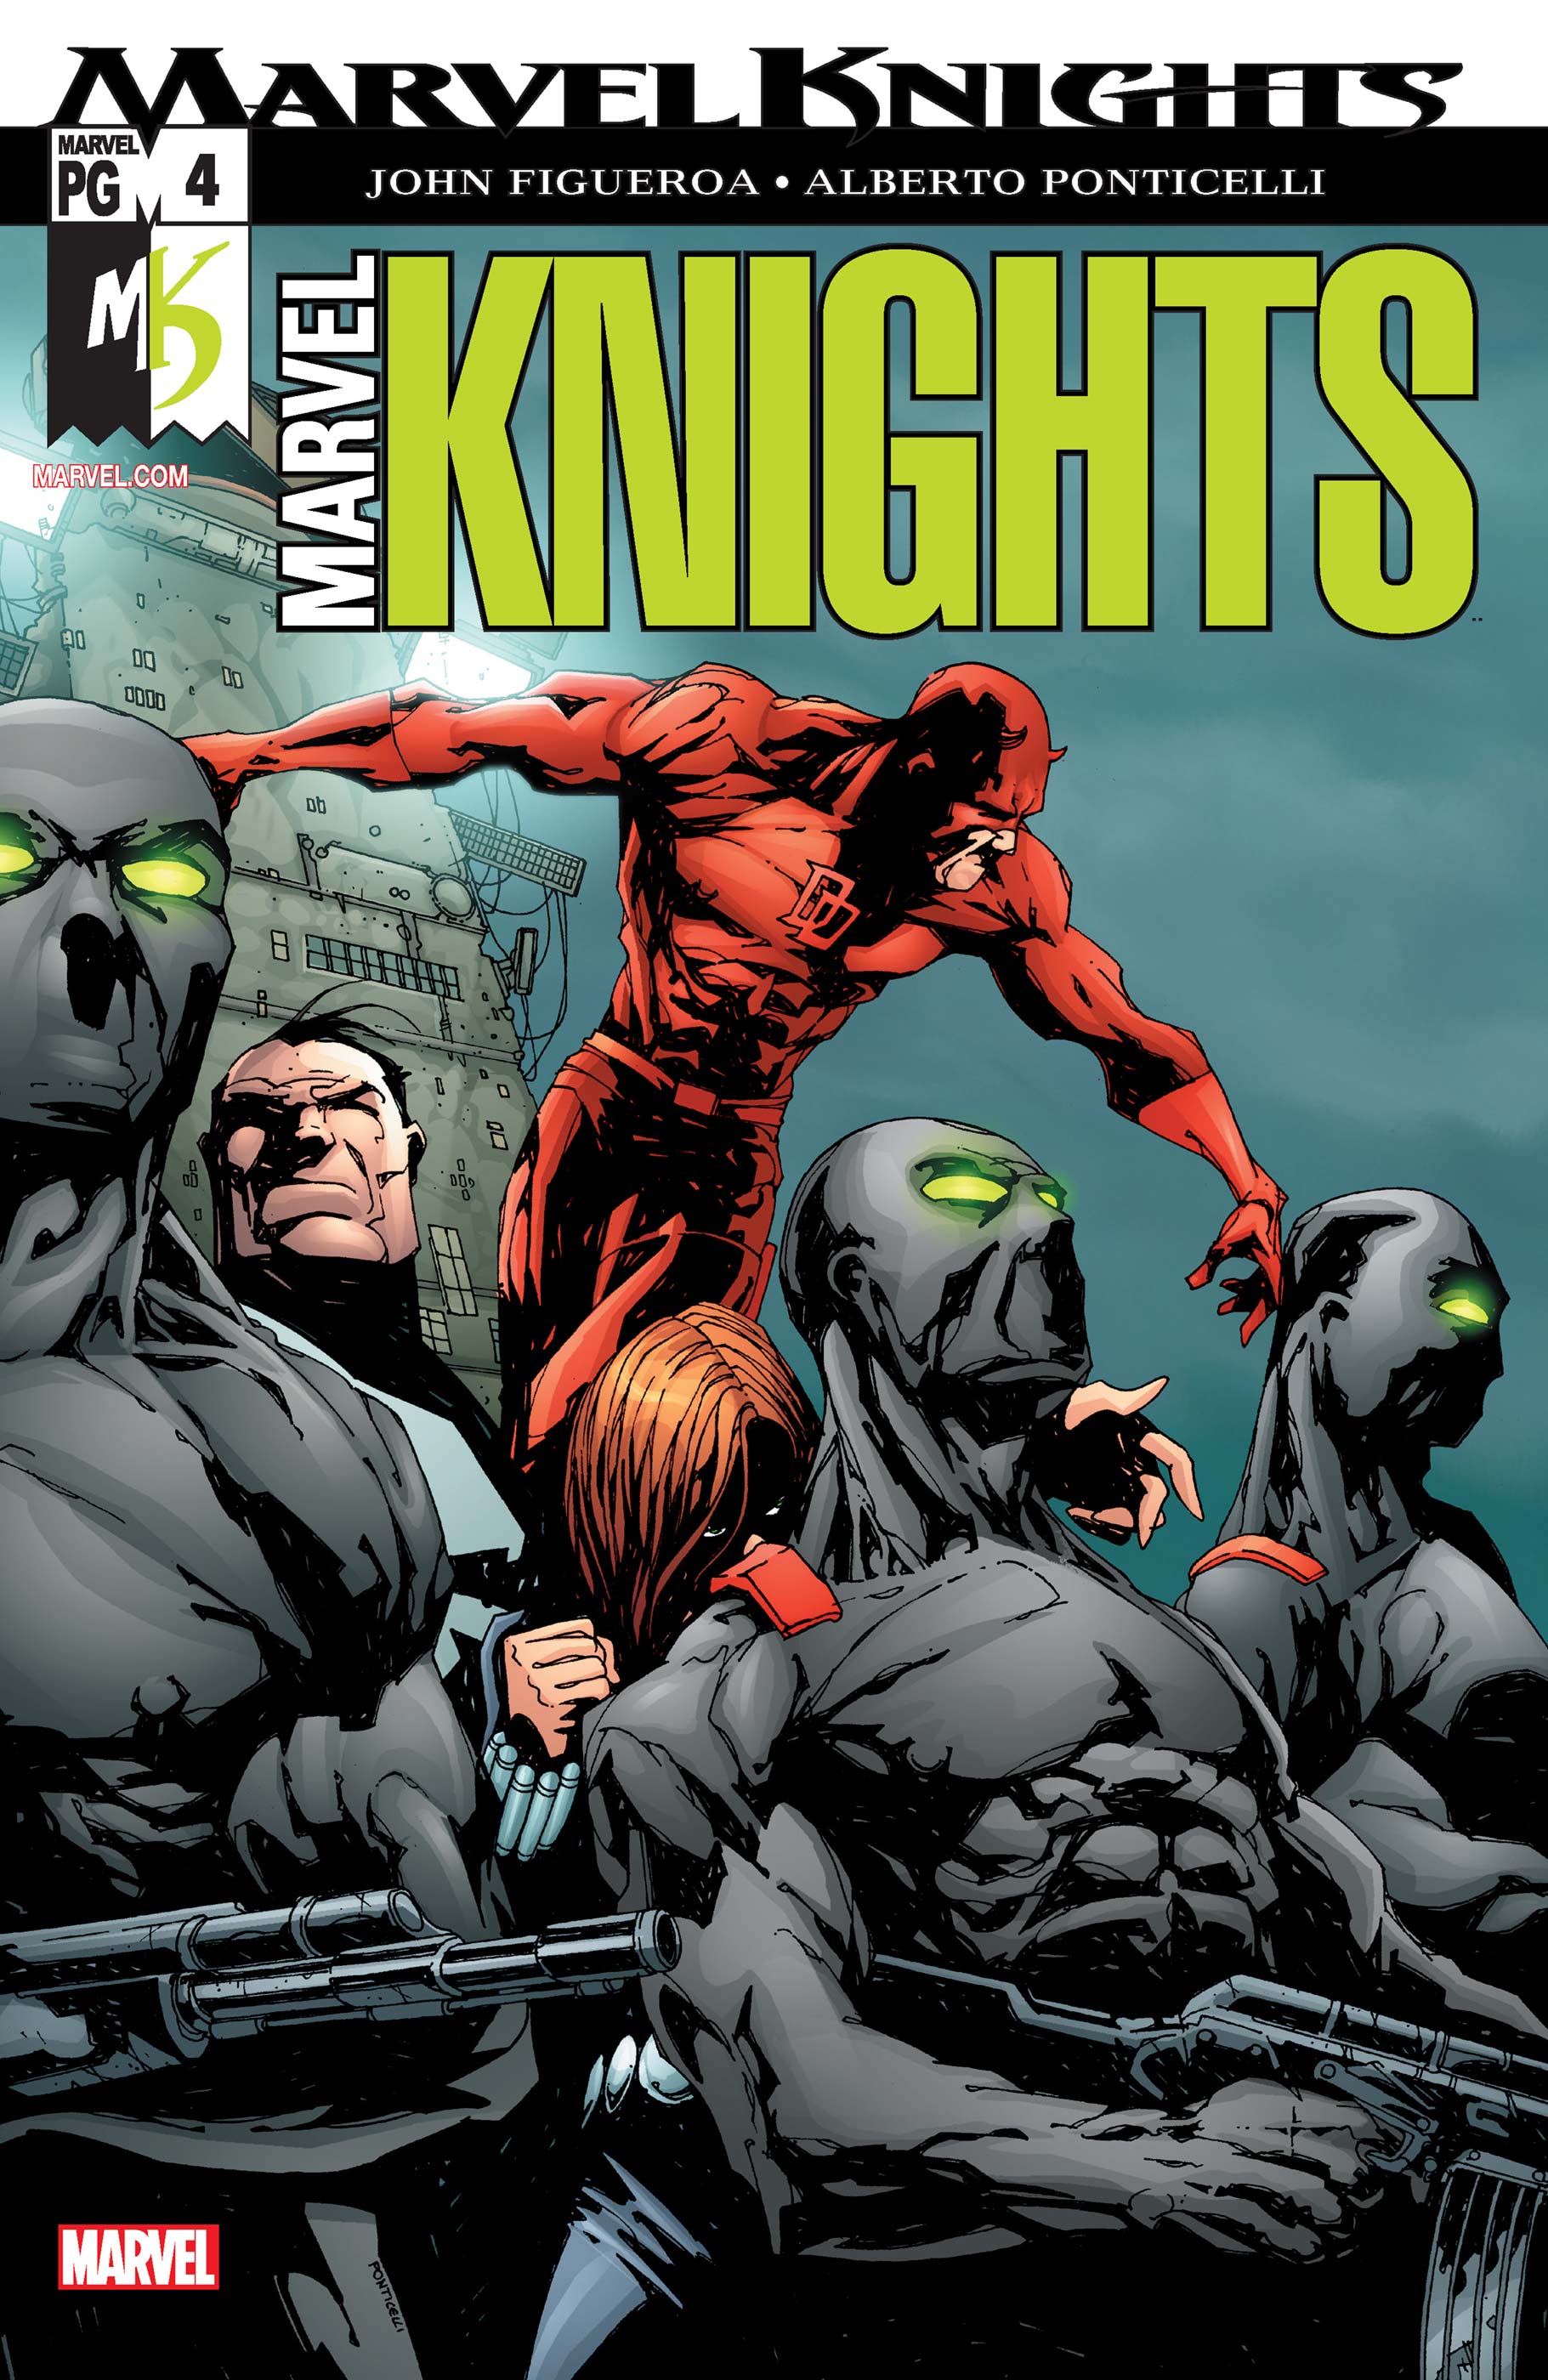 Marvel Knights (2002) #4